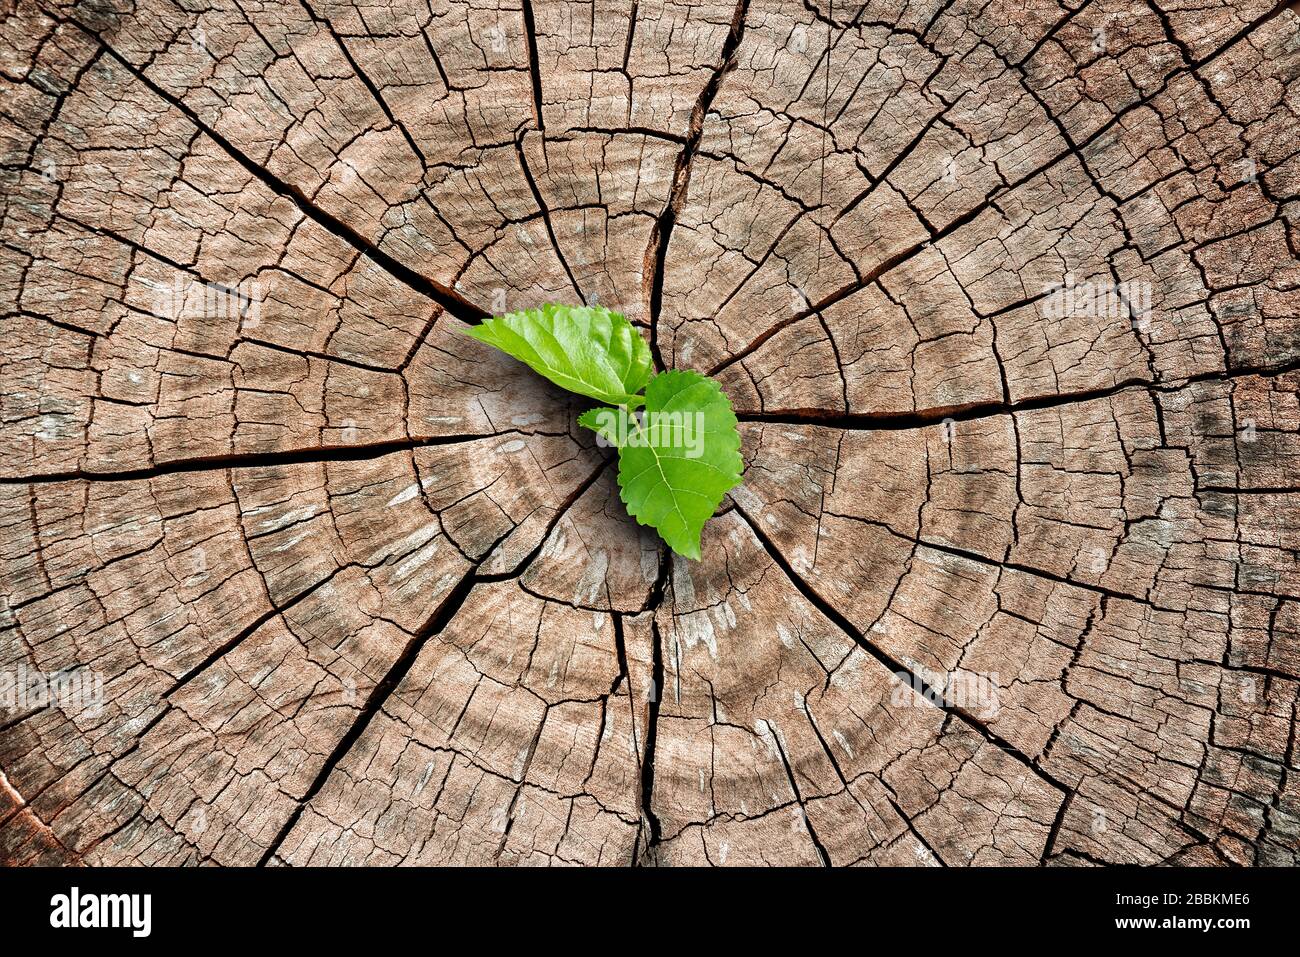 Ein neues Leben beginnt mit dem Spross grüner Blätter auf einem abgestorbenen Baumstumpf. Erholung der Natur Stockfoto